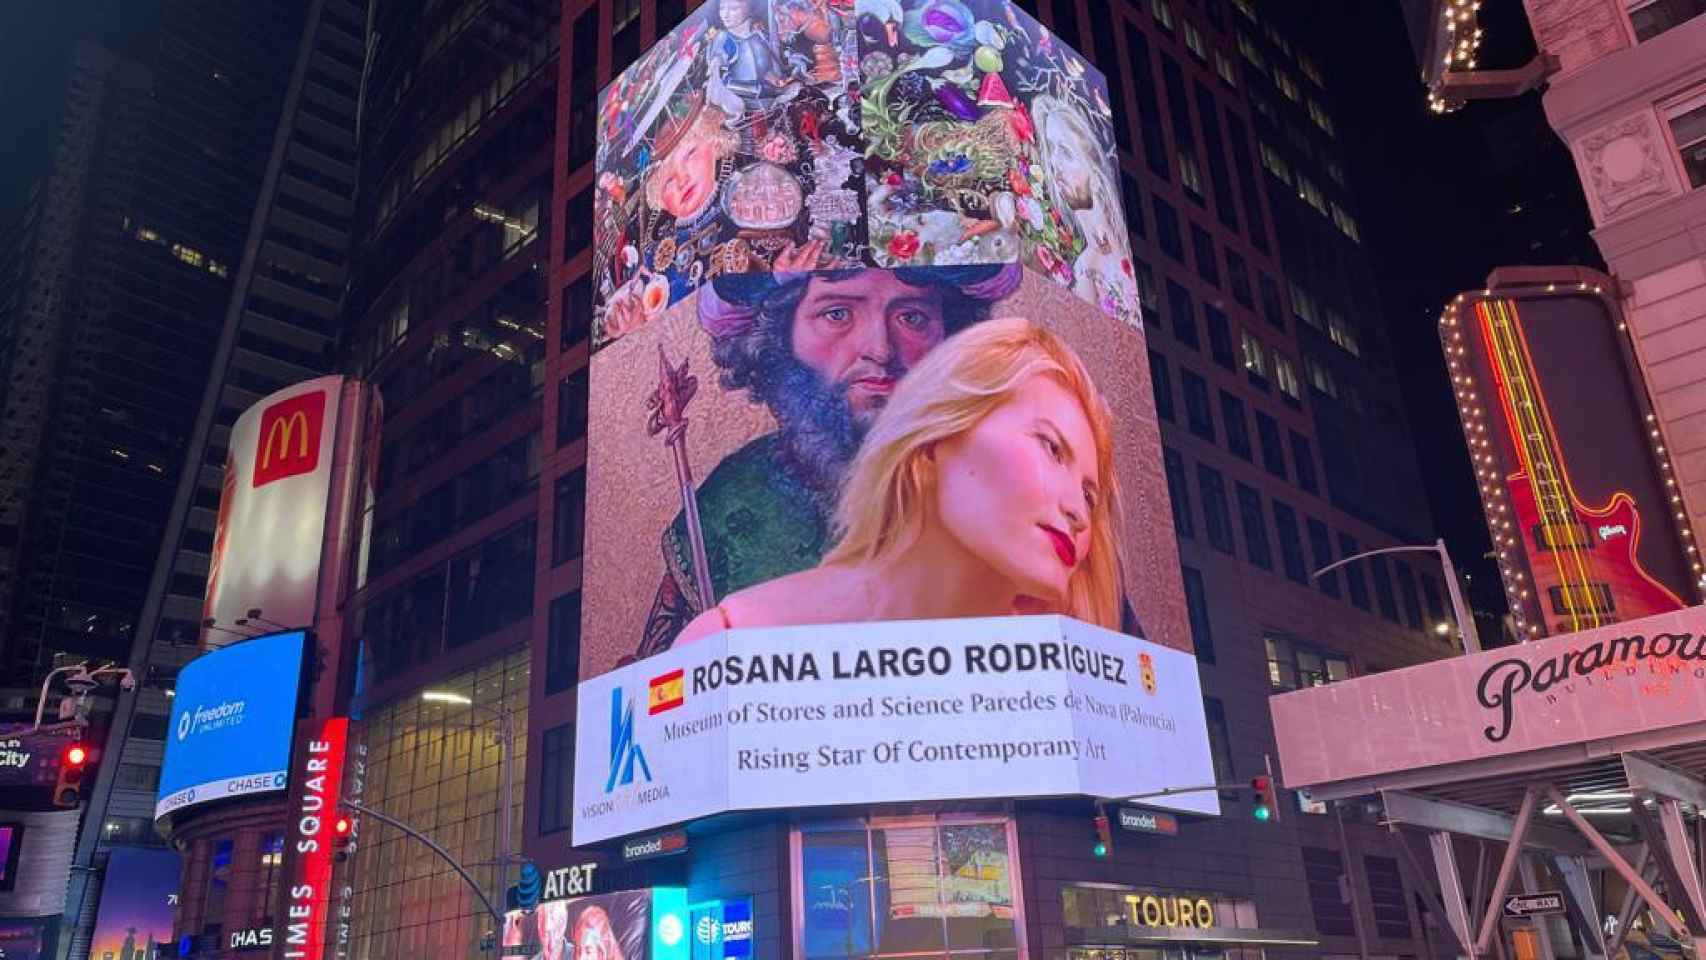 La valla publicitaria de Times Square con la obra de Rosana Largo